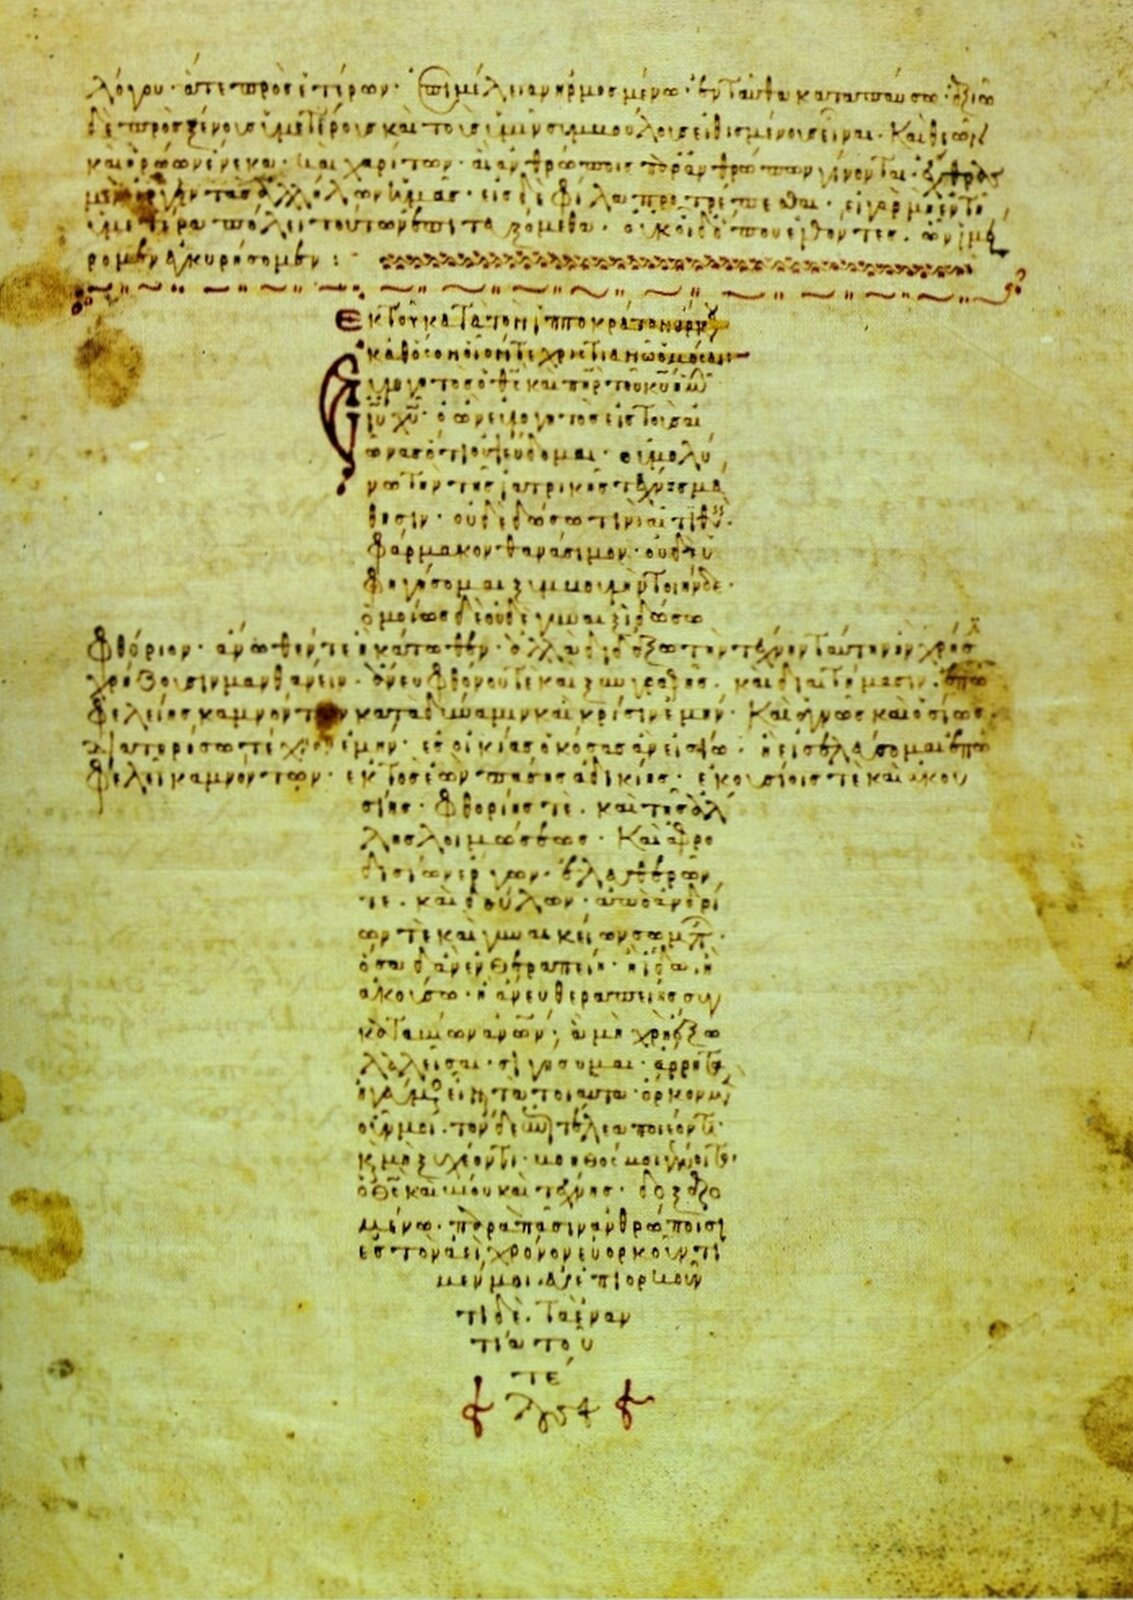 Fotografia nieznanego autora przedstawia widok na rękopis „Corpus Hippocraticum” – zżółknięta, zabrudzona karta na której znajdują się teksty o tematyce medycznej. Pismo nie jest niewyraźne, zapisane czarnym i czerwonym kolorem.